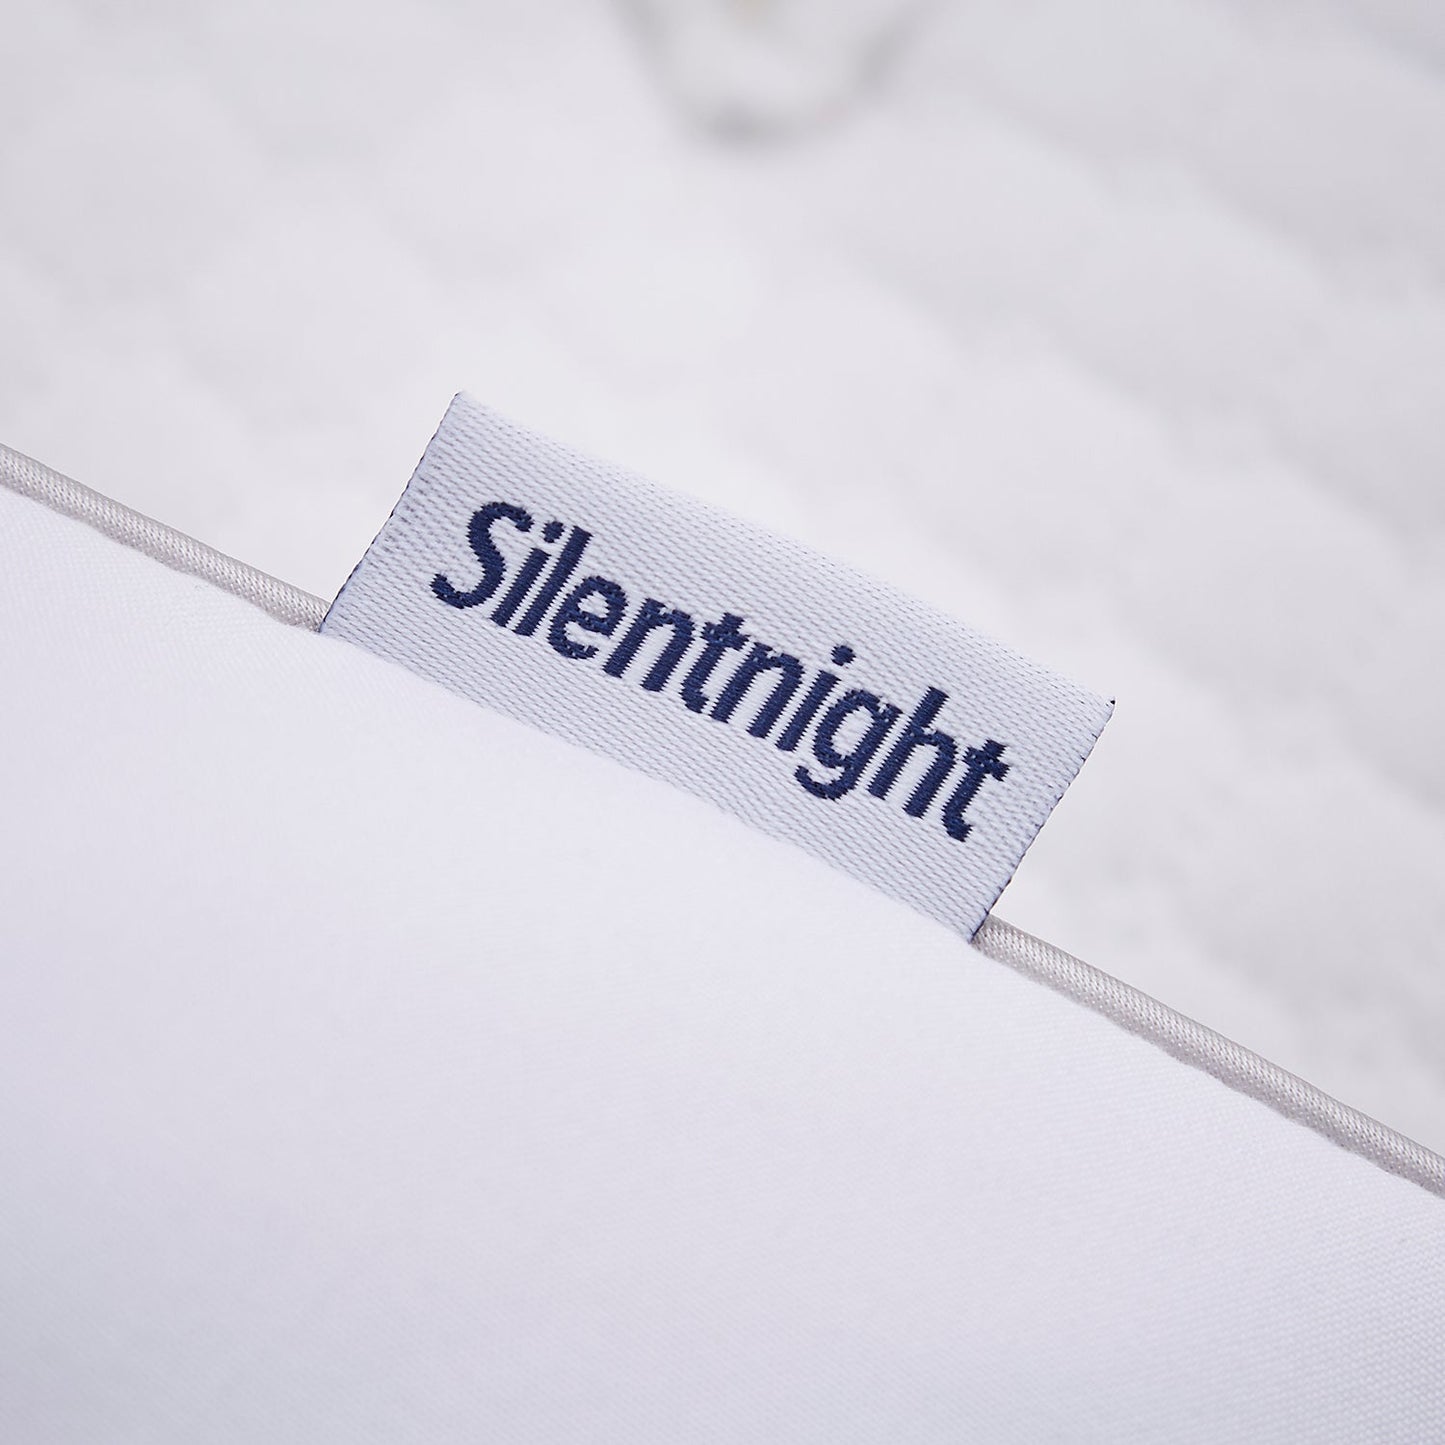 Silentnight So Snug Pillow Pair - Medium Support